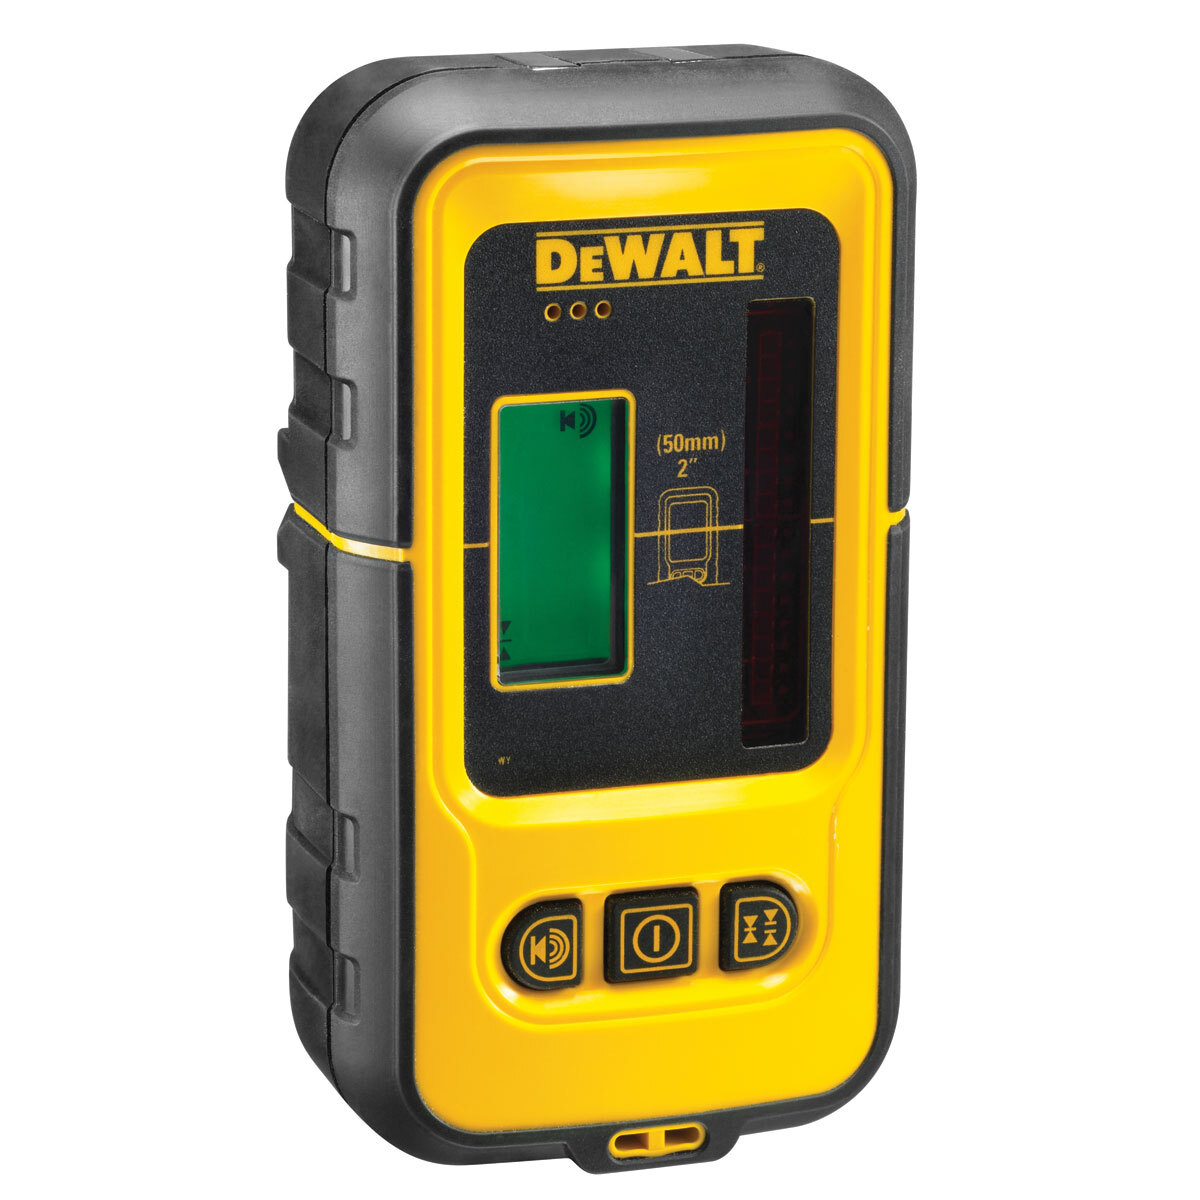 DeWalt DE0892 digitale ontvanger voor DW088K / DW089K / DW0811 - 50m - rode laser